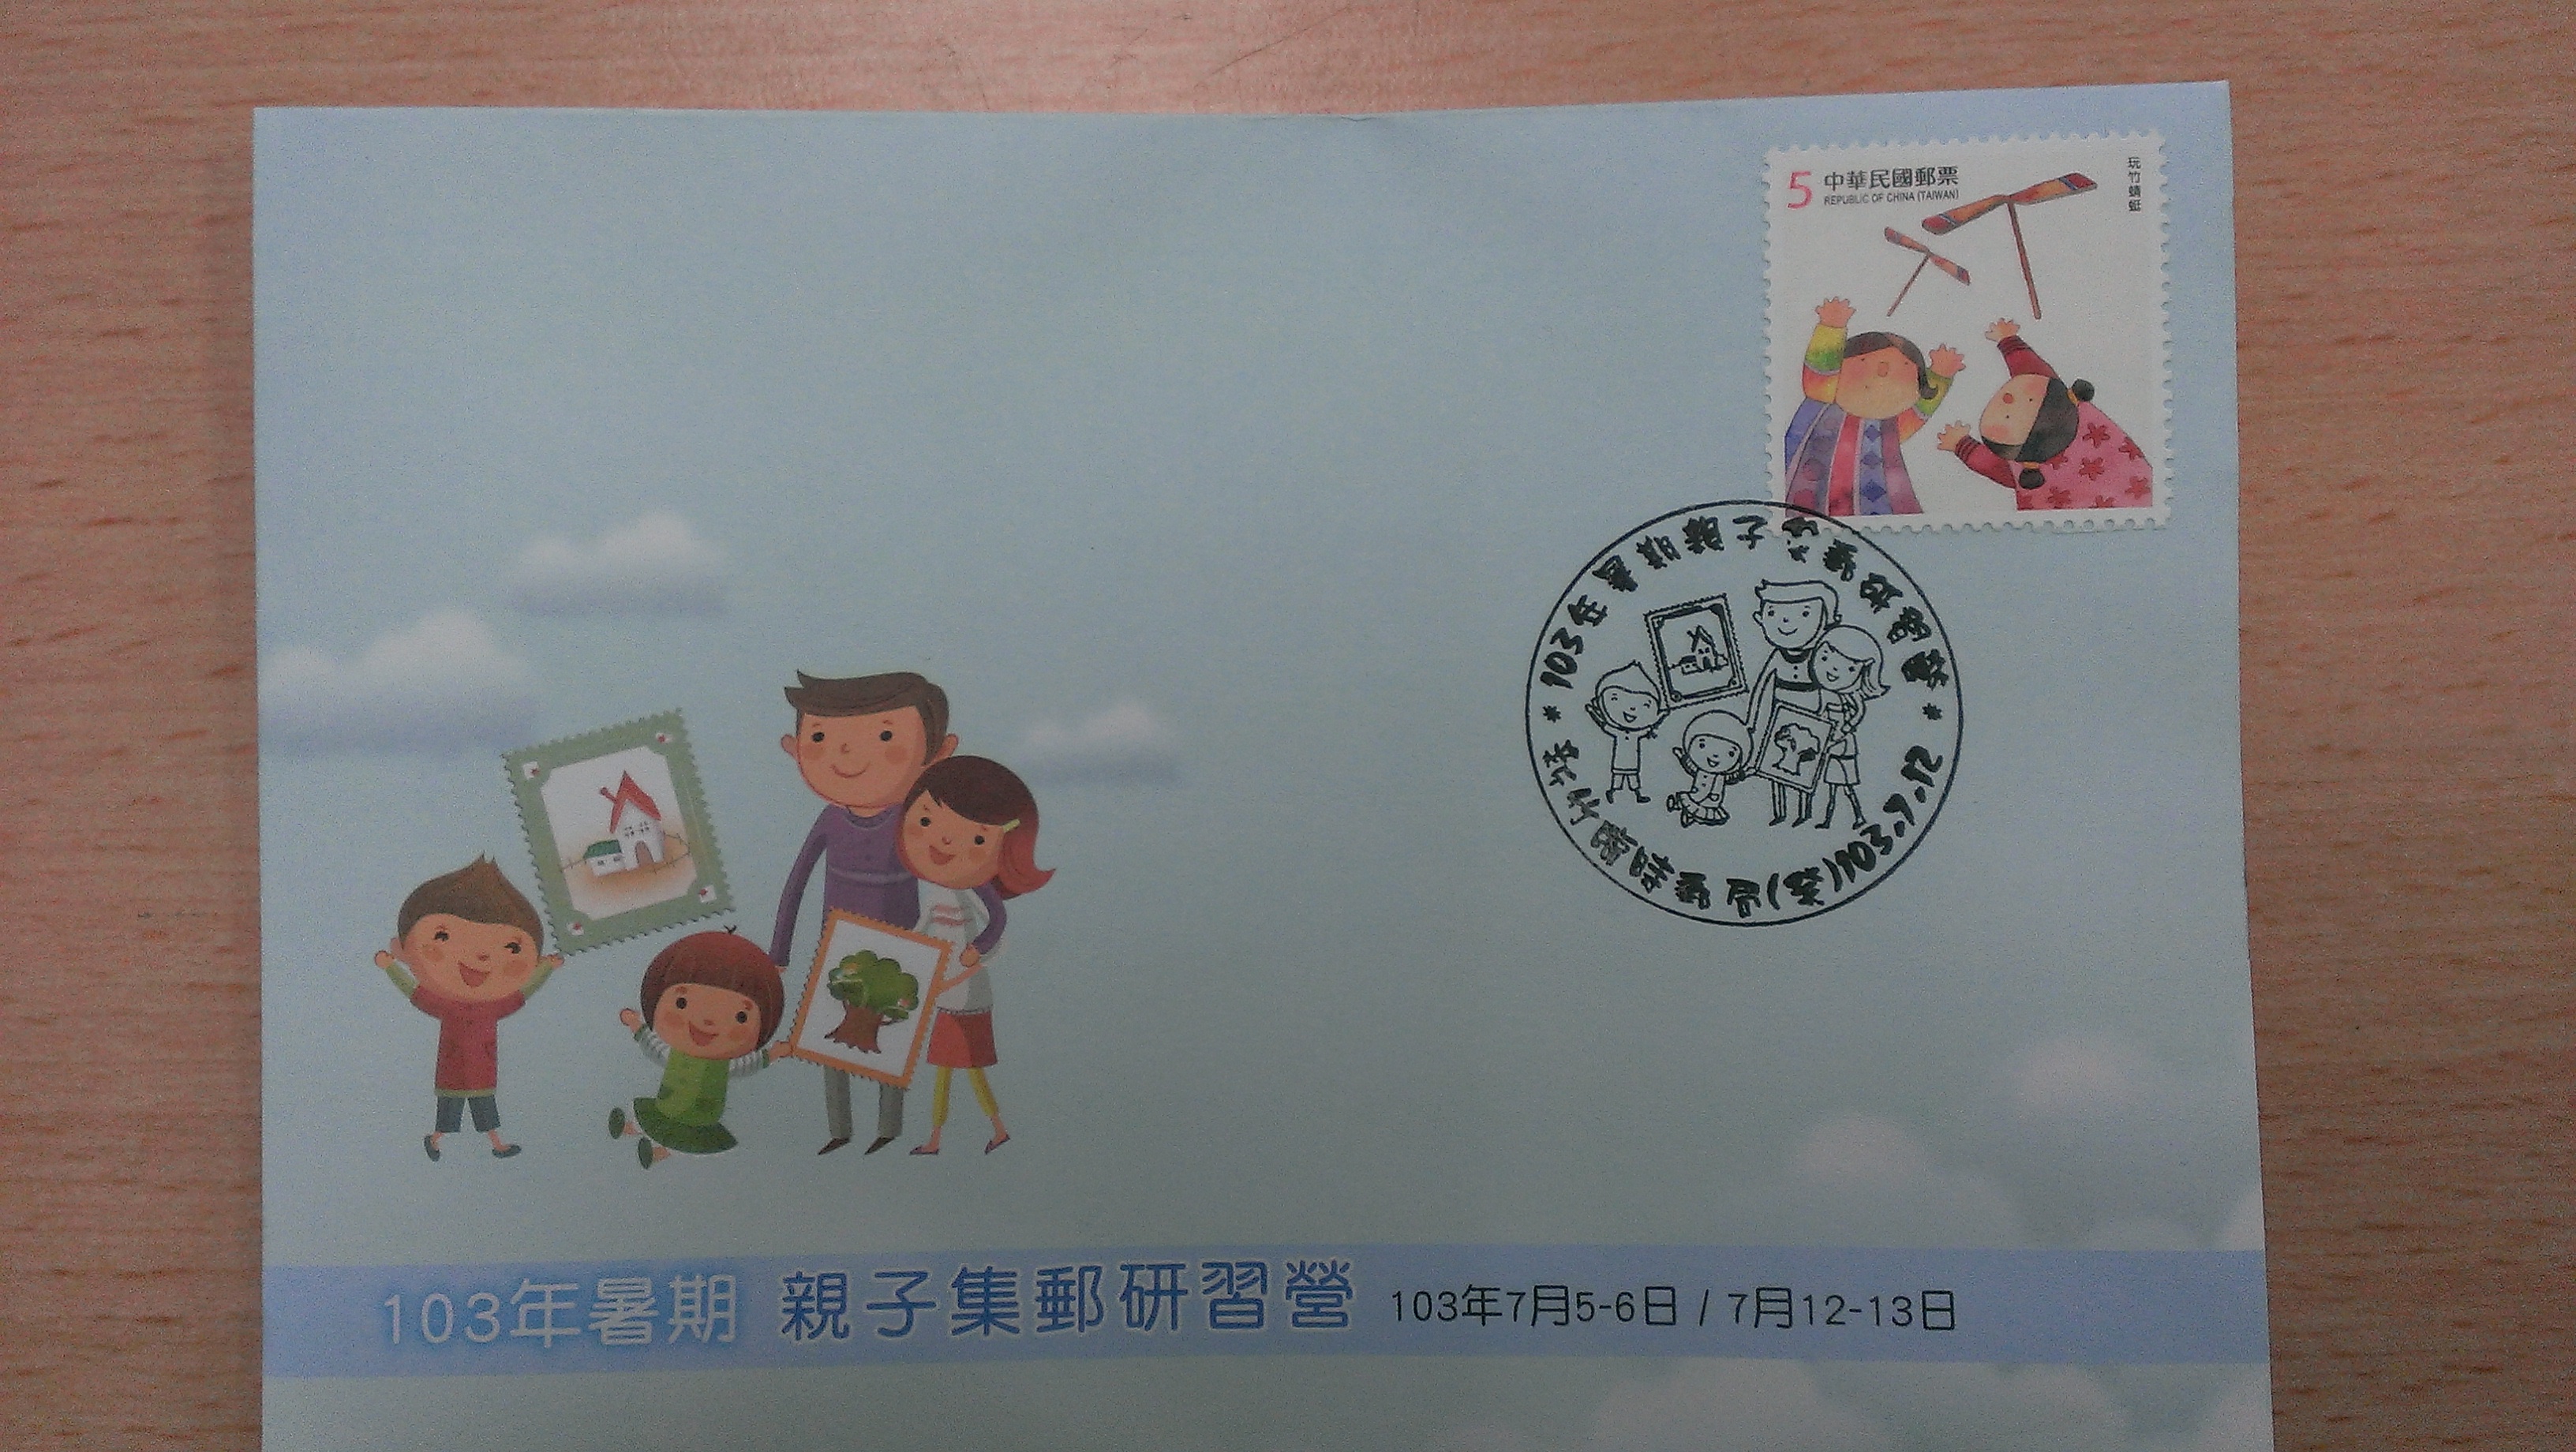 新竹郵局103年暑期親子集郵研習營